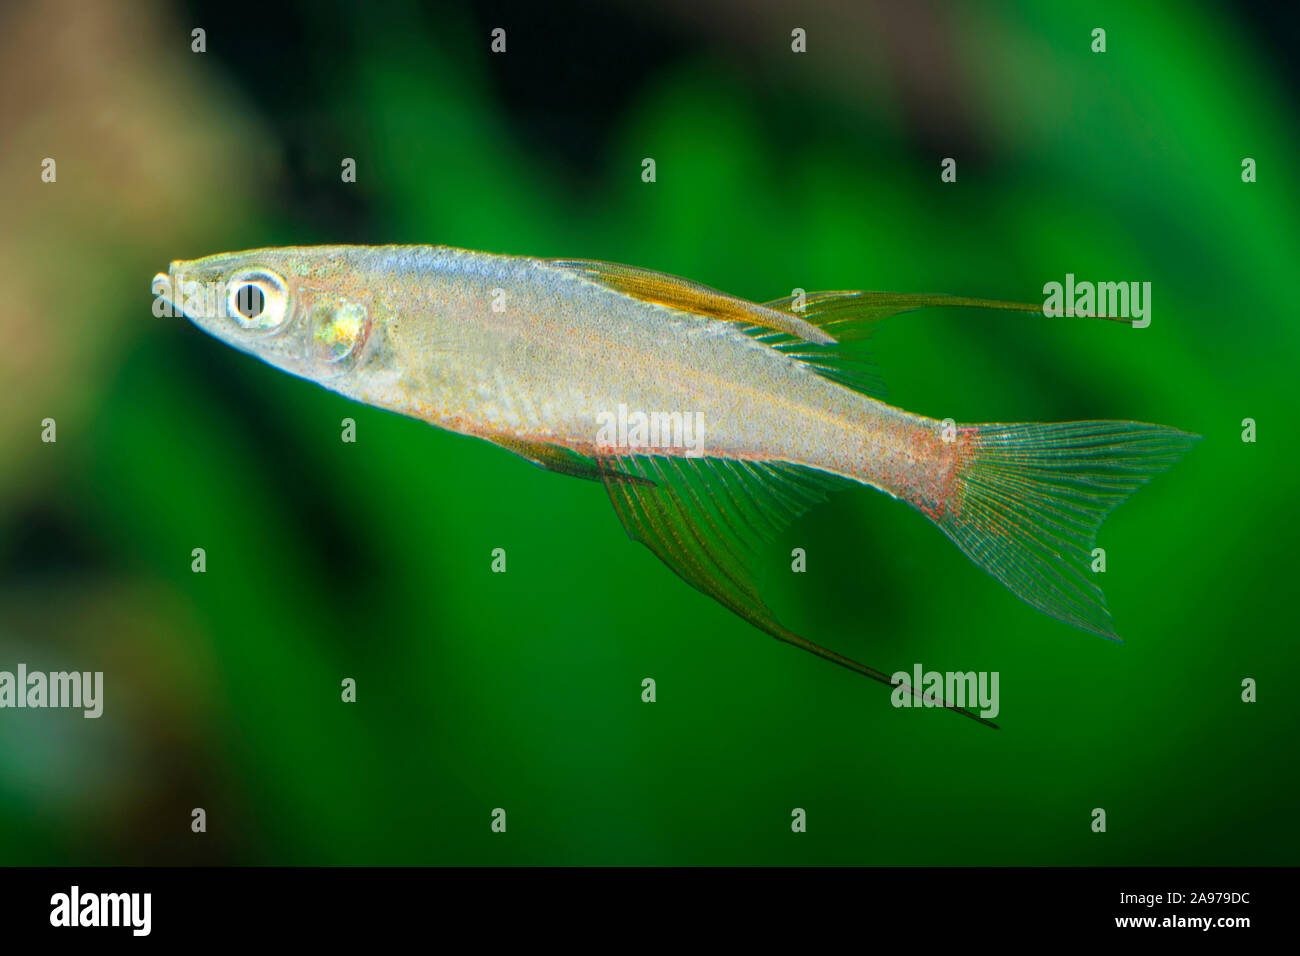 Iriatherina werneri,Schmetterlingsregenbogenfisch,Featherfin Rainbowfish Stock Photo